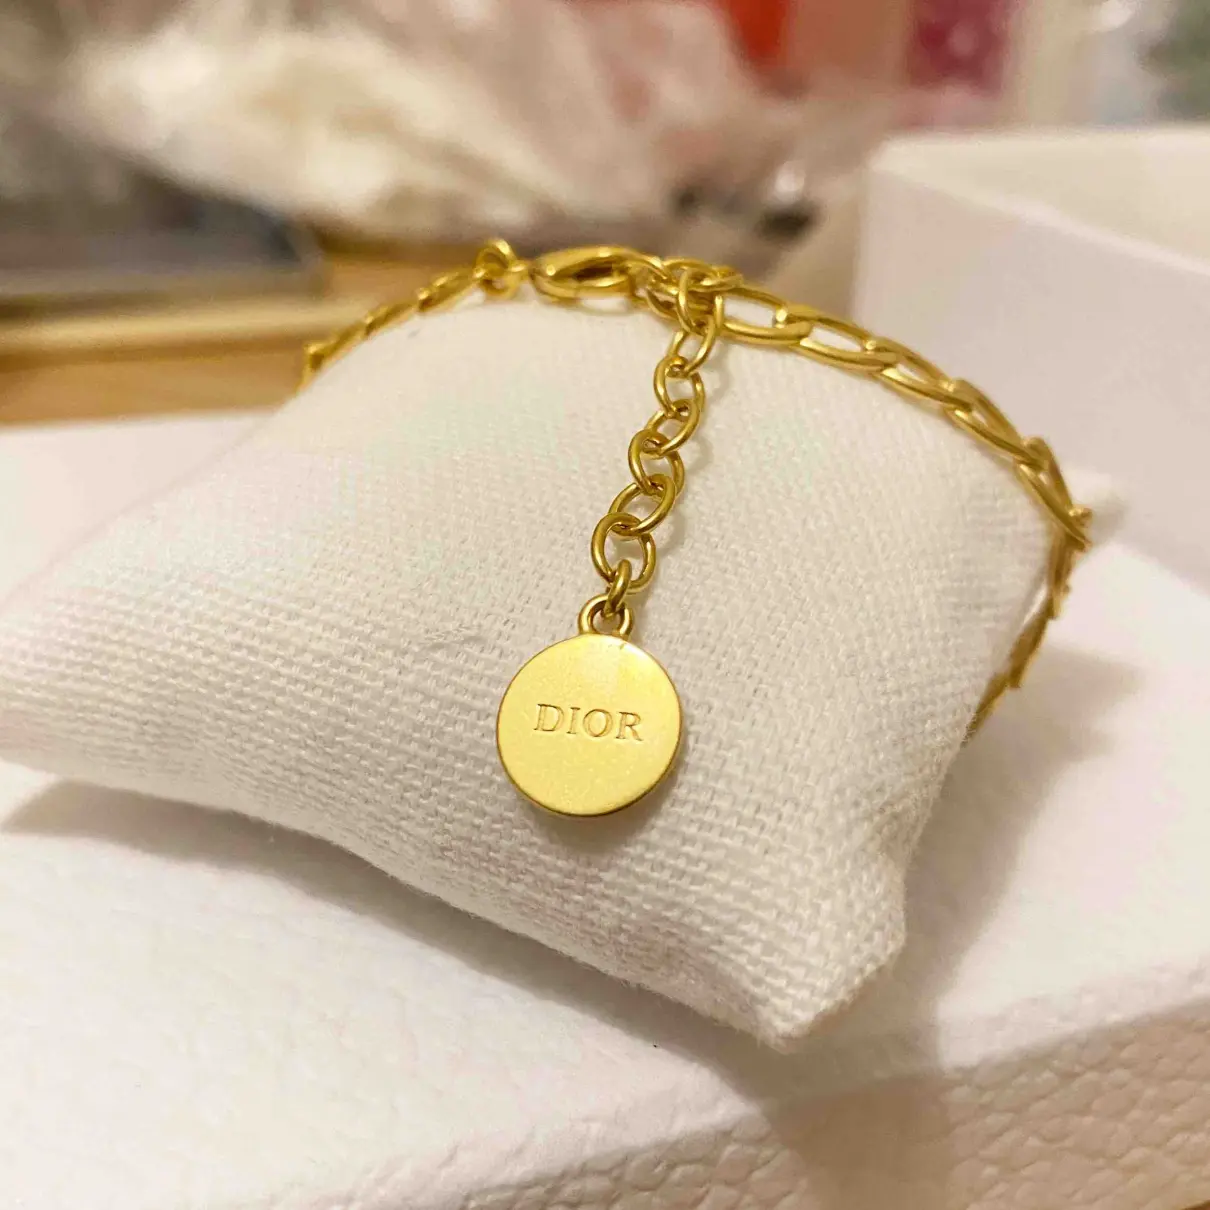 Buy Dior Gold Metal Bracelet online